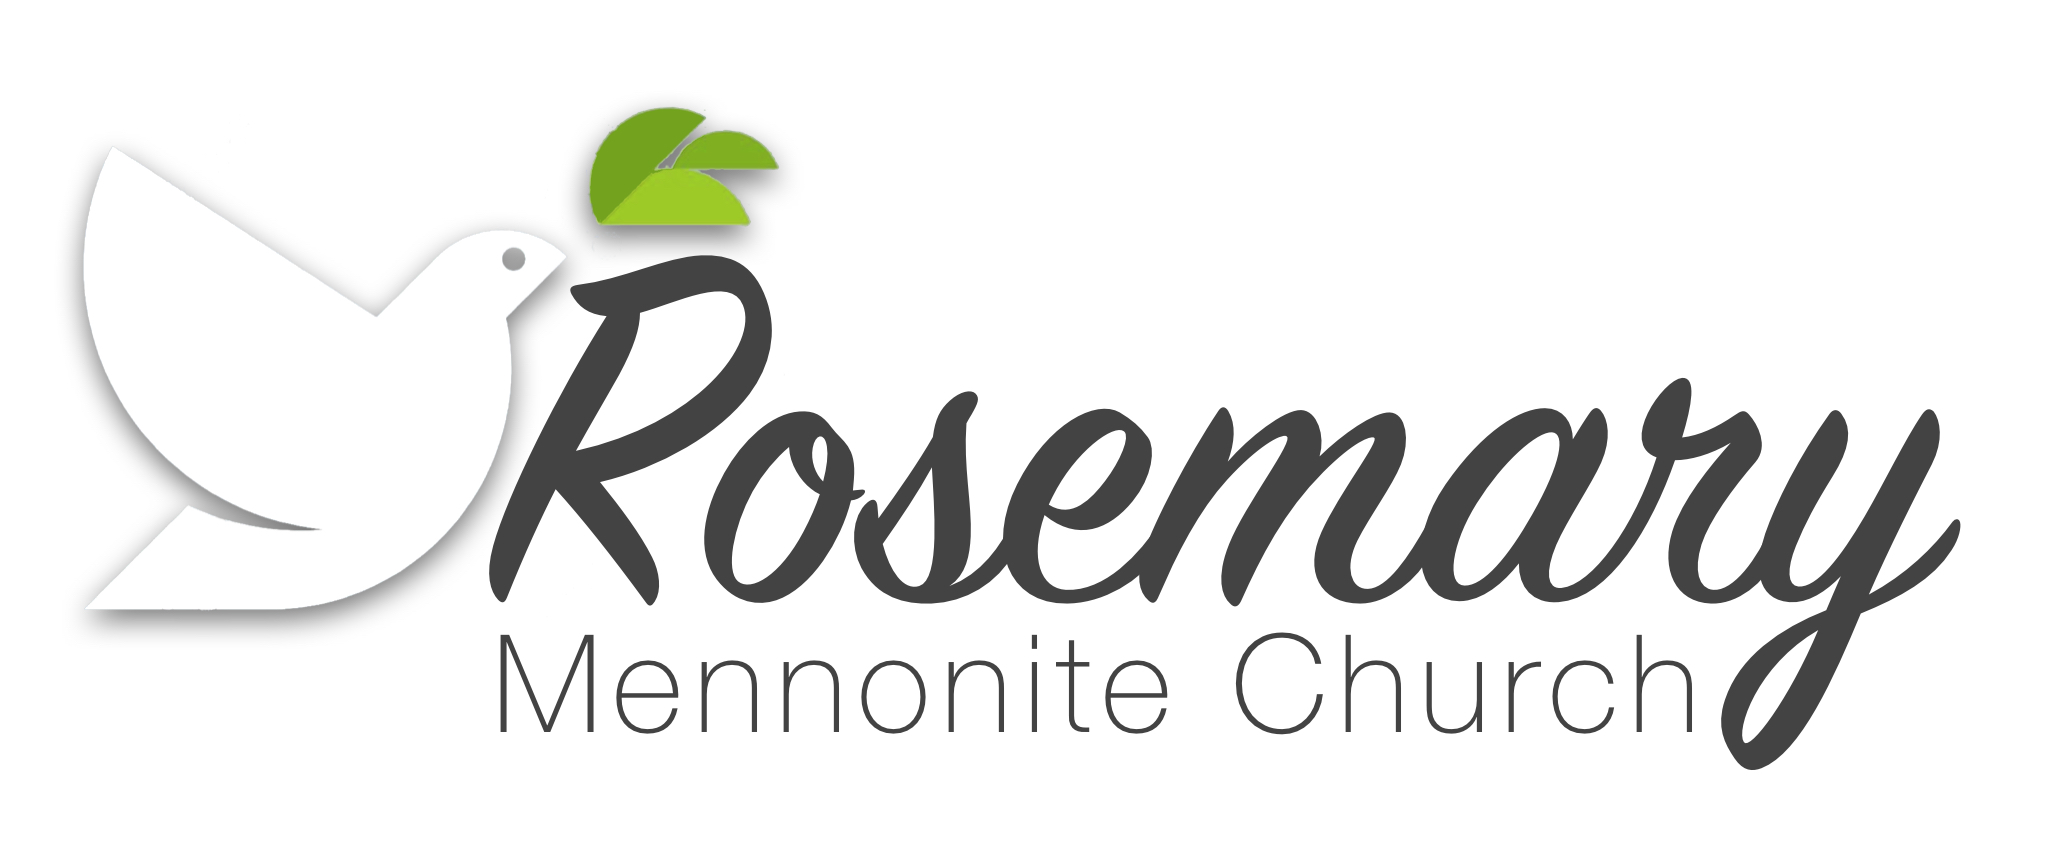 Rosemary Mennonite Church